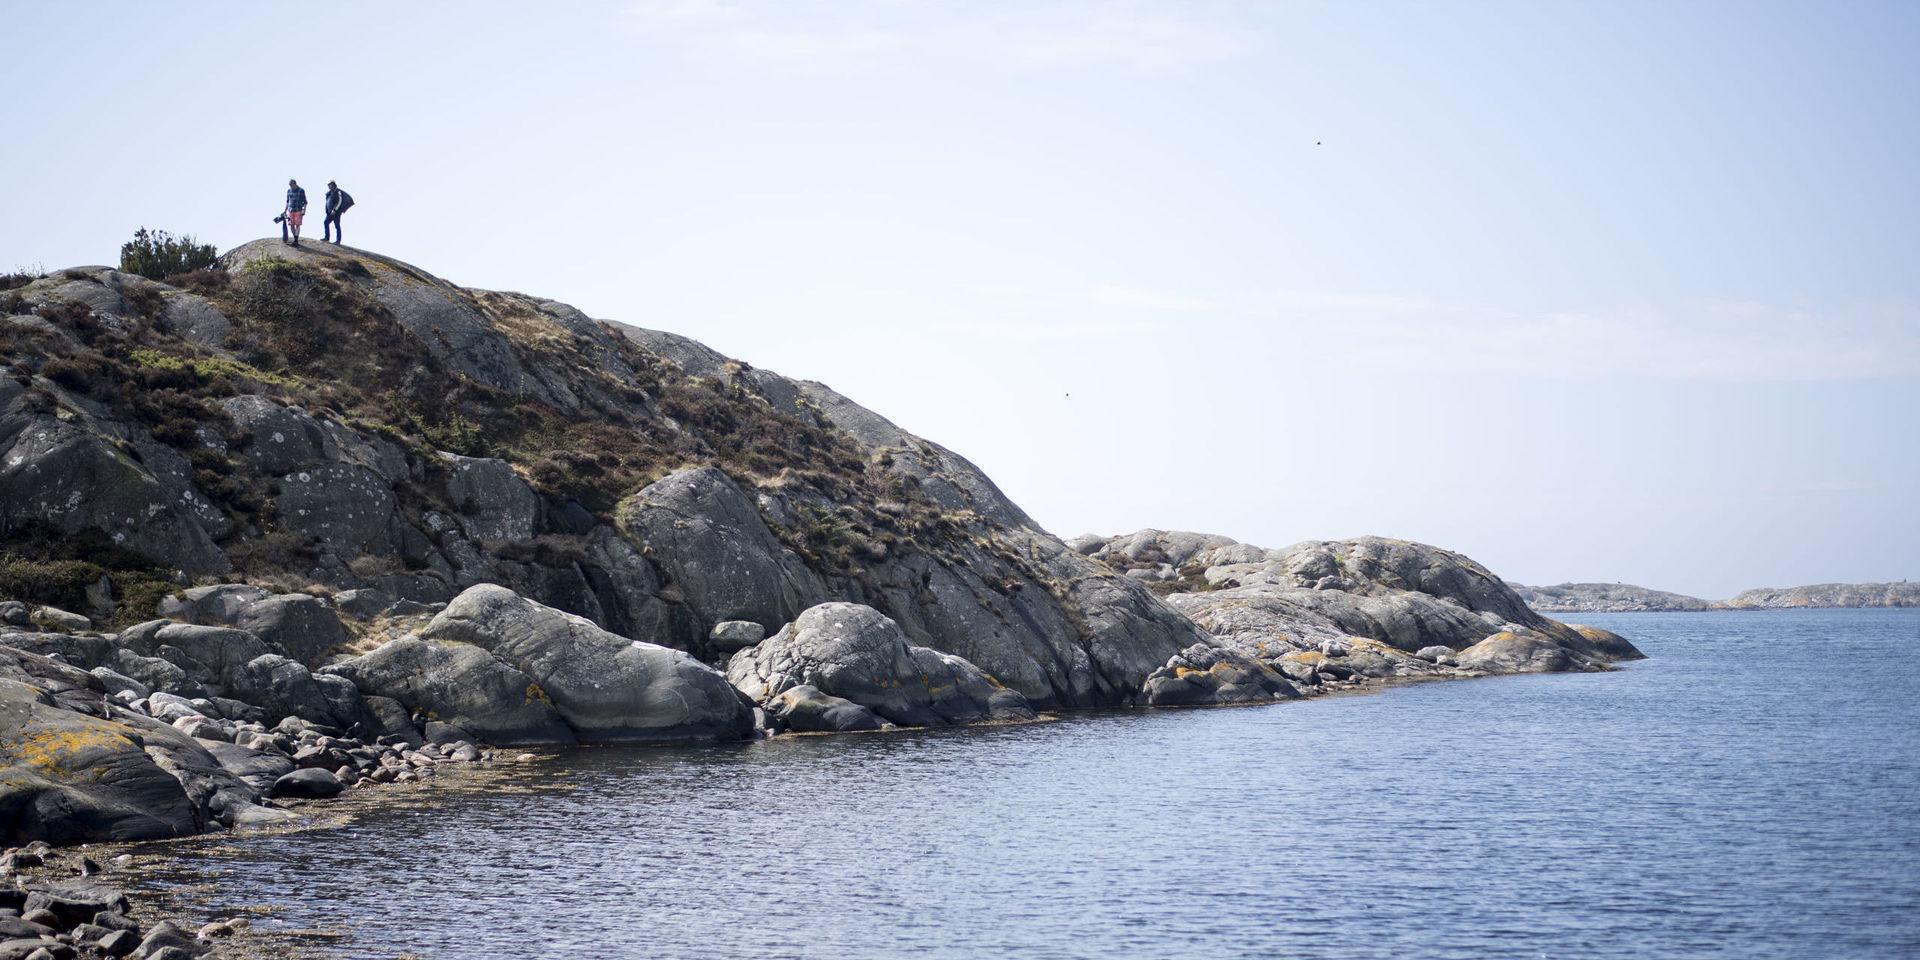  Inför sommaren uppmanar vi därför alla boende i Västra Götaland att fortsätta kampen för renare hav. Bli en kusträddare i sommar, skriver Johanna Ragnartz, Håll Sverige rent.